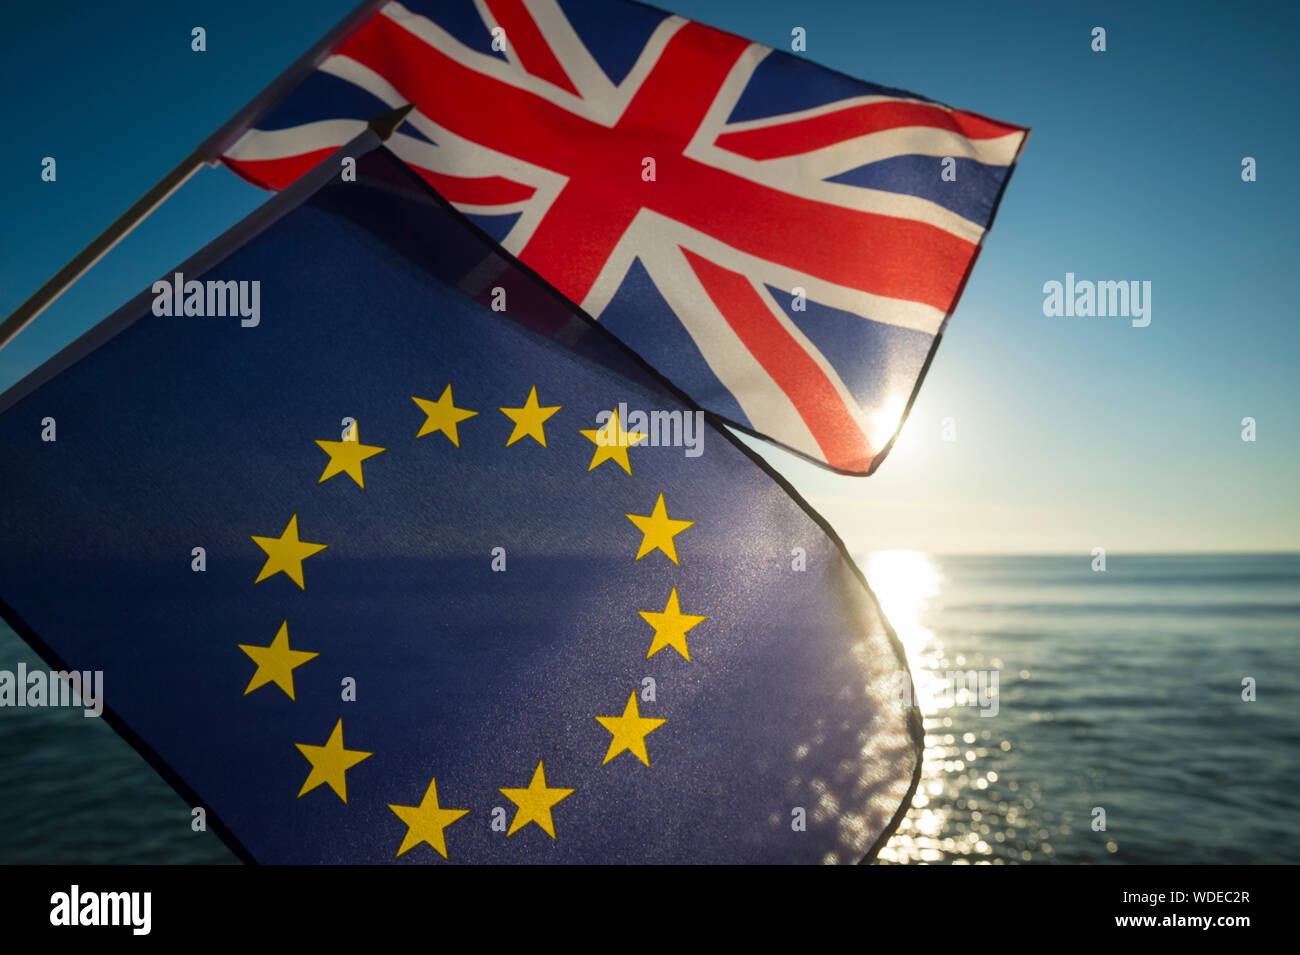 Europäischen Union und der britische Union Jack Fahnen fliegen zusammen wie die Sonne geht in eine neue Ära auf das Verhältnis zwischen der EU und Großbritannien nach Brexit Stockfoto